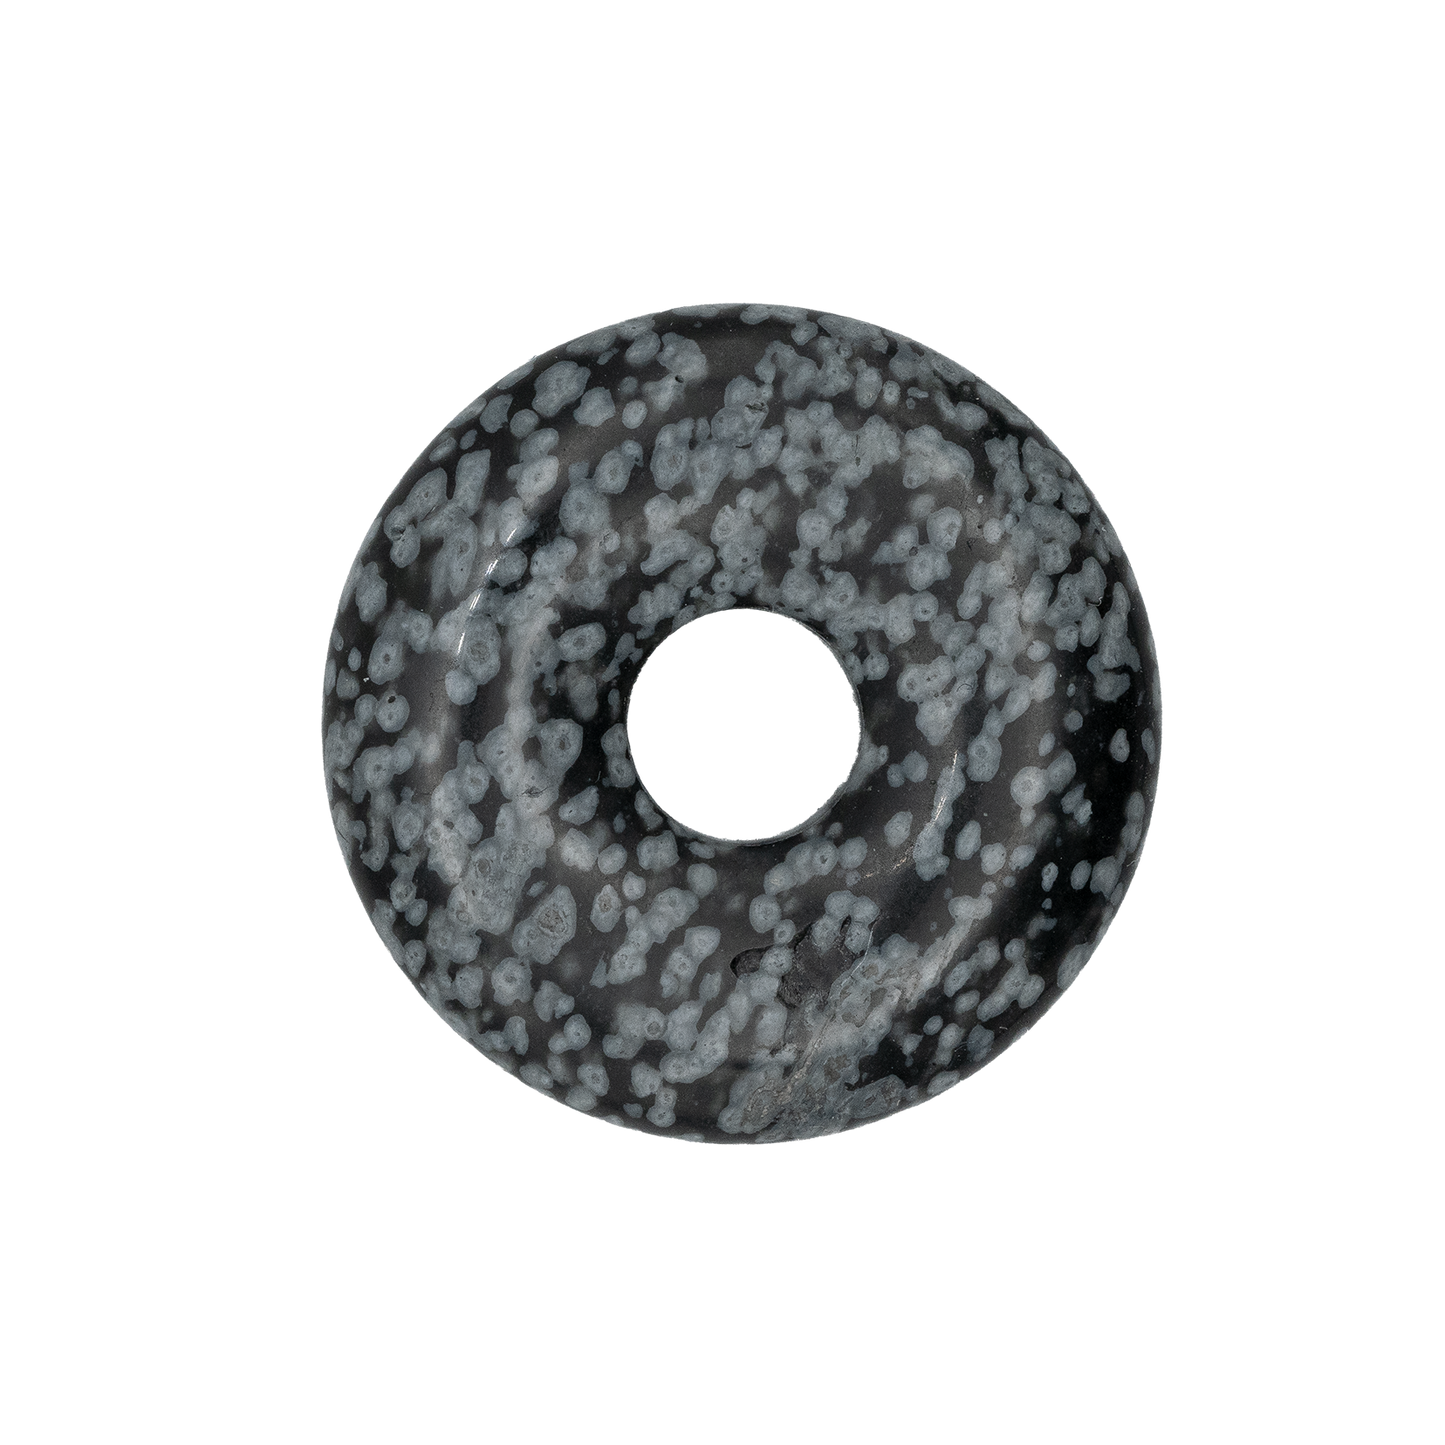 Obsidian "Schneeflockenobsidian" Donut